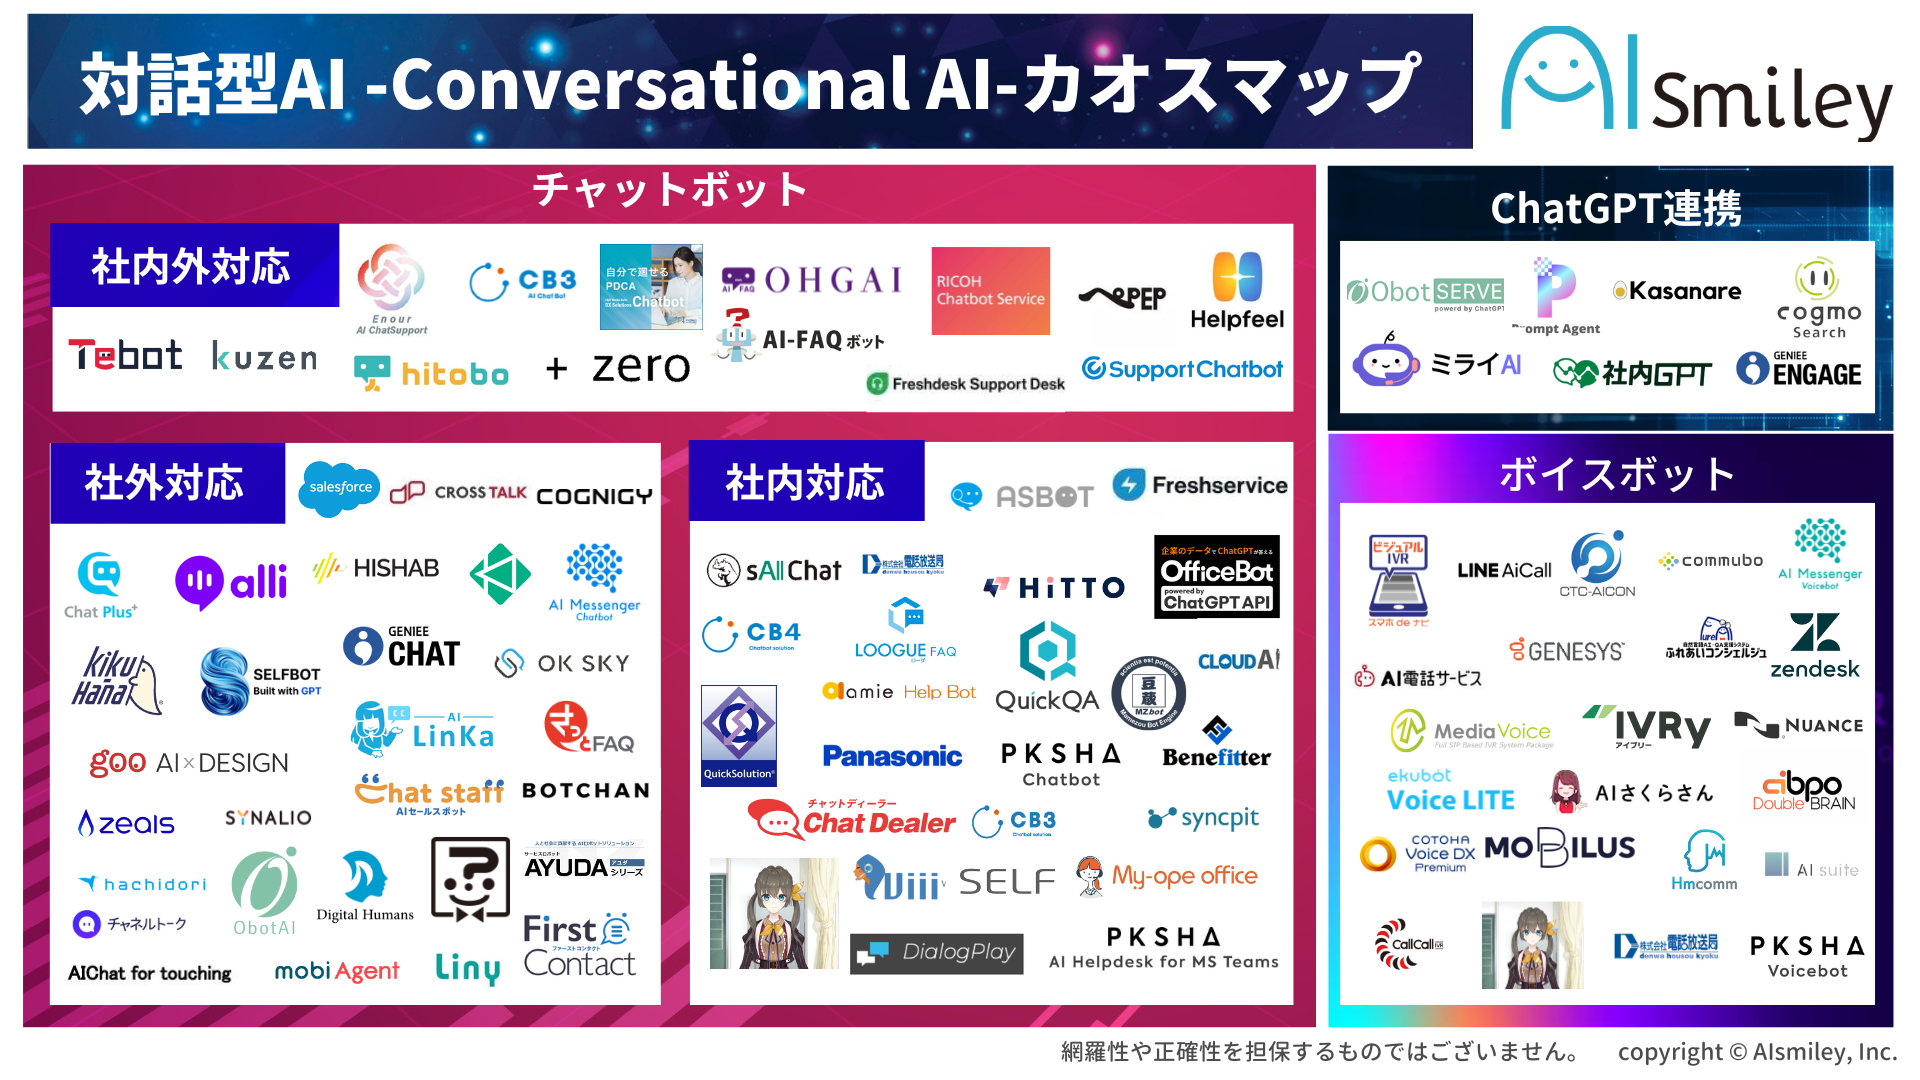 対話型AI -Conversational AI-カオスマップを公開！今話題のChatGPT連携サービスも掲載！